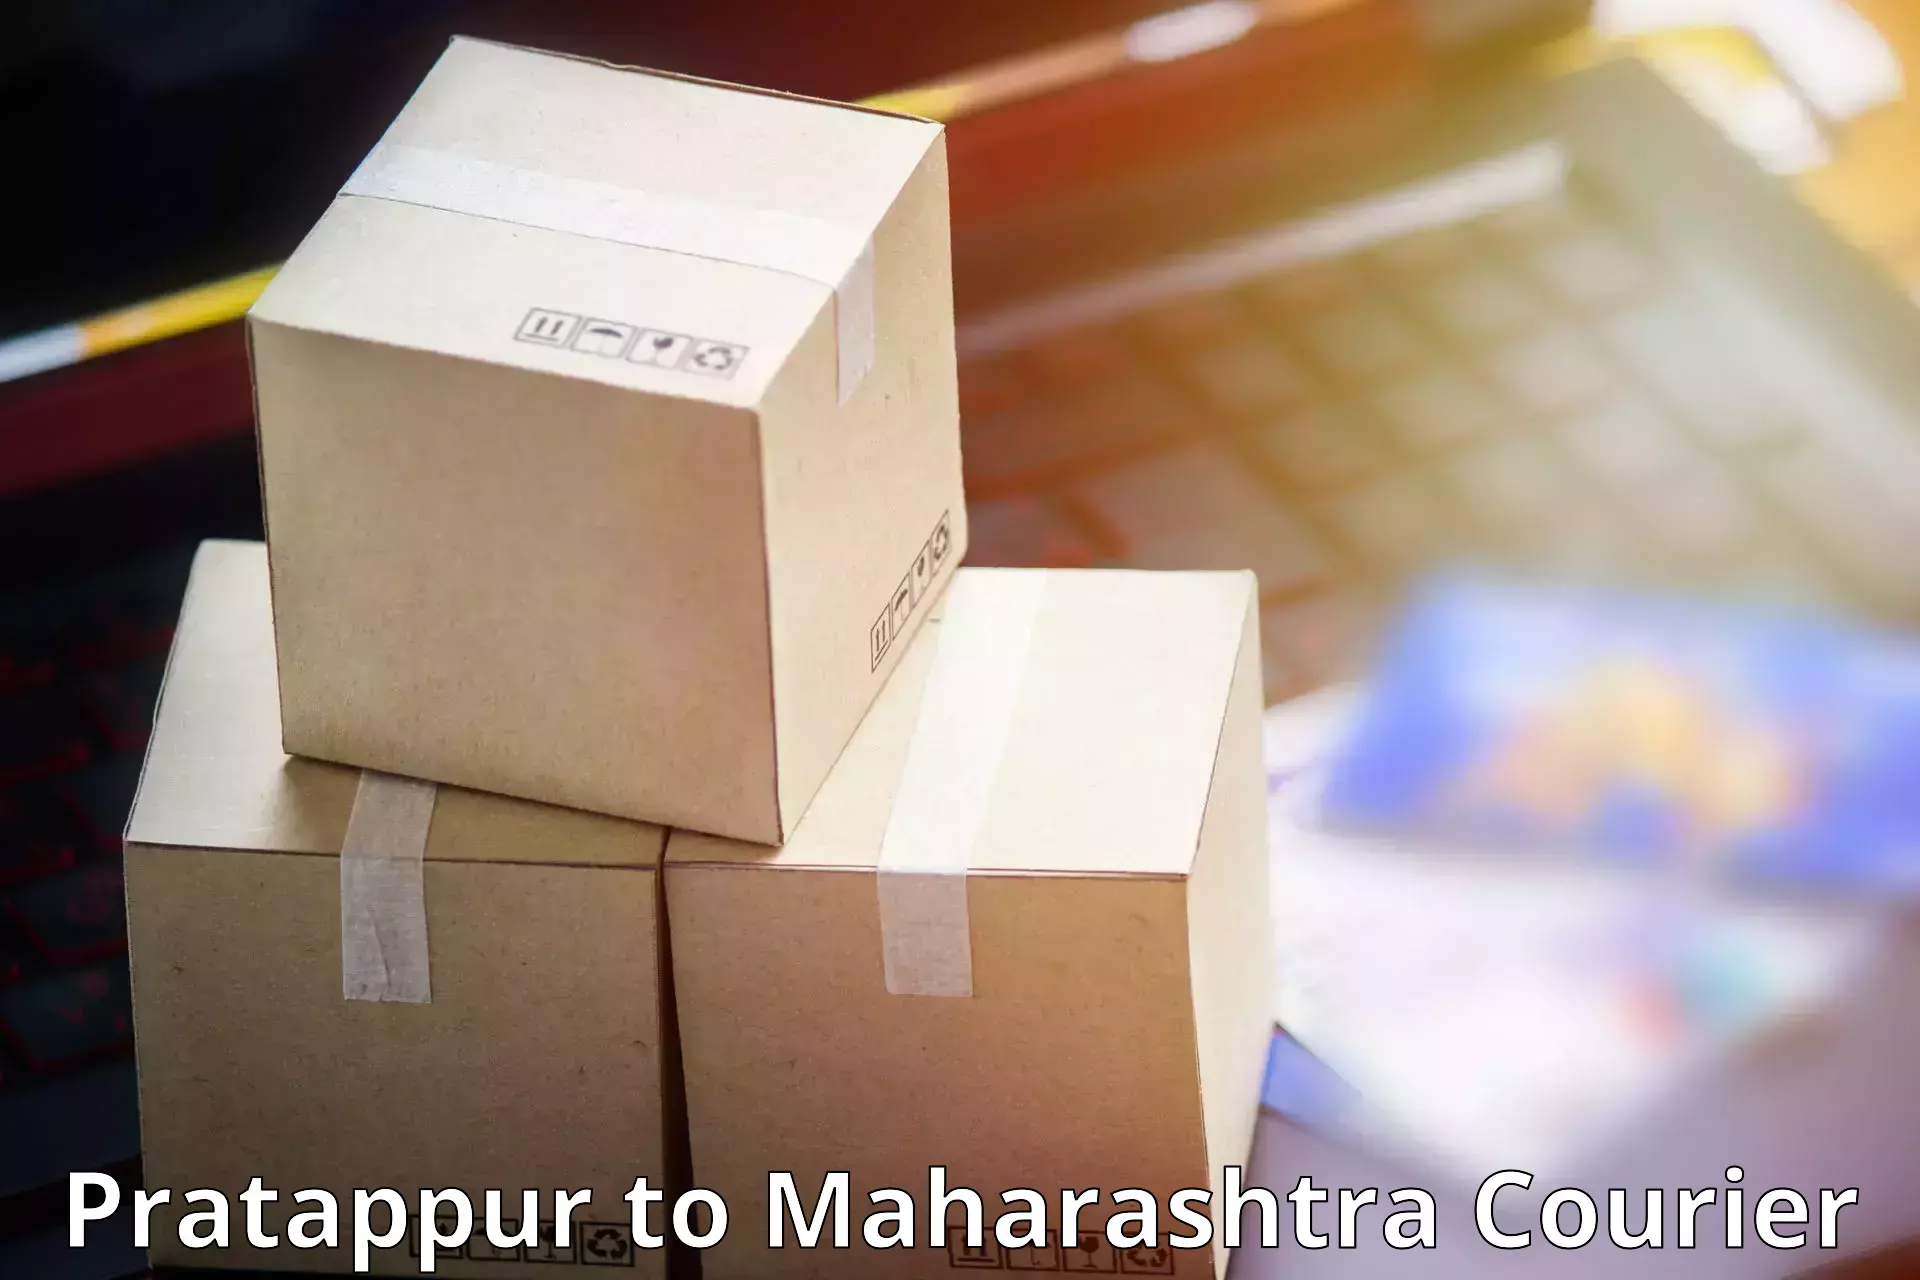 Premium courier services Pratappur to Dindori Nashik